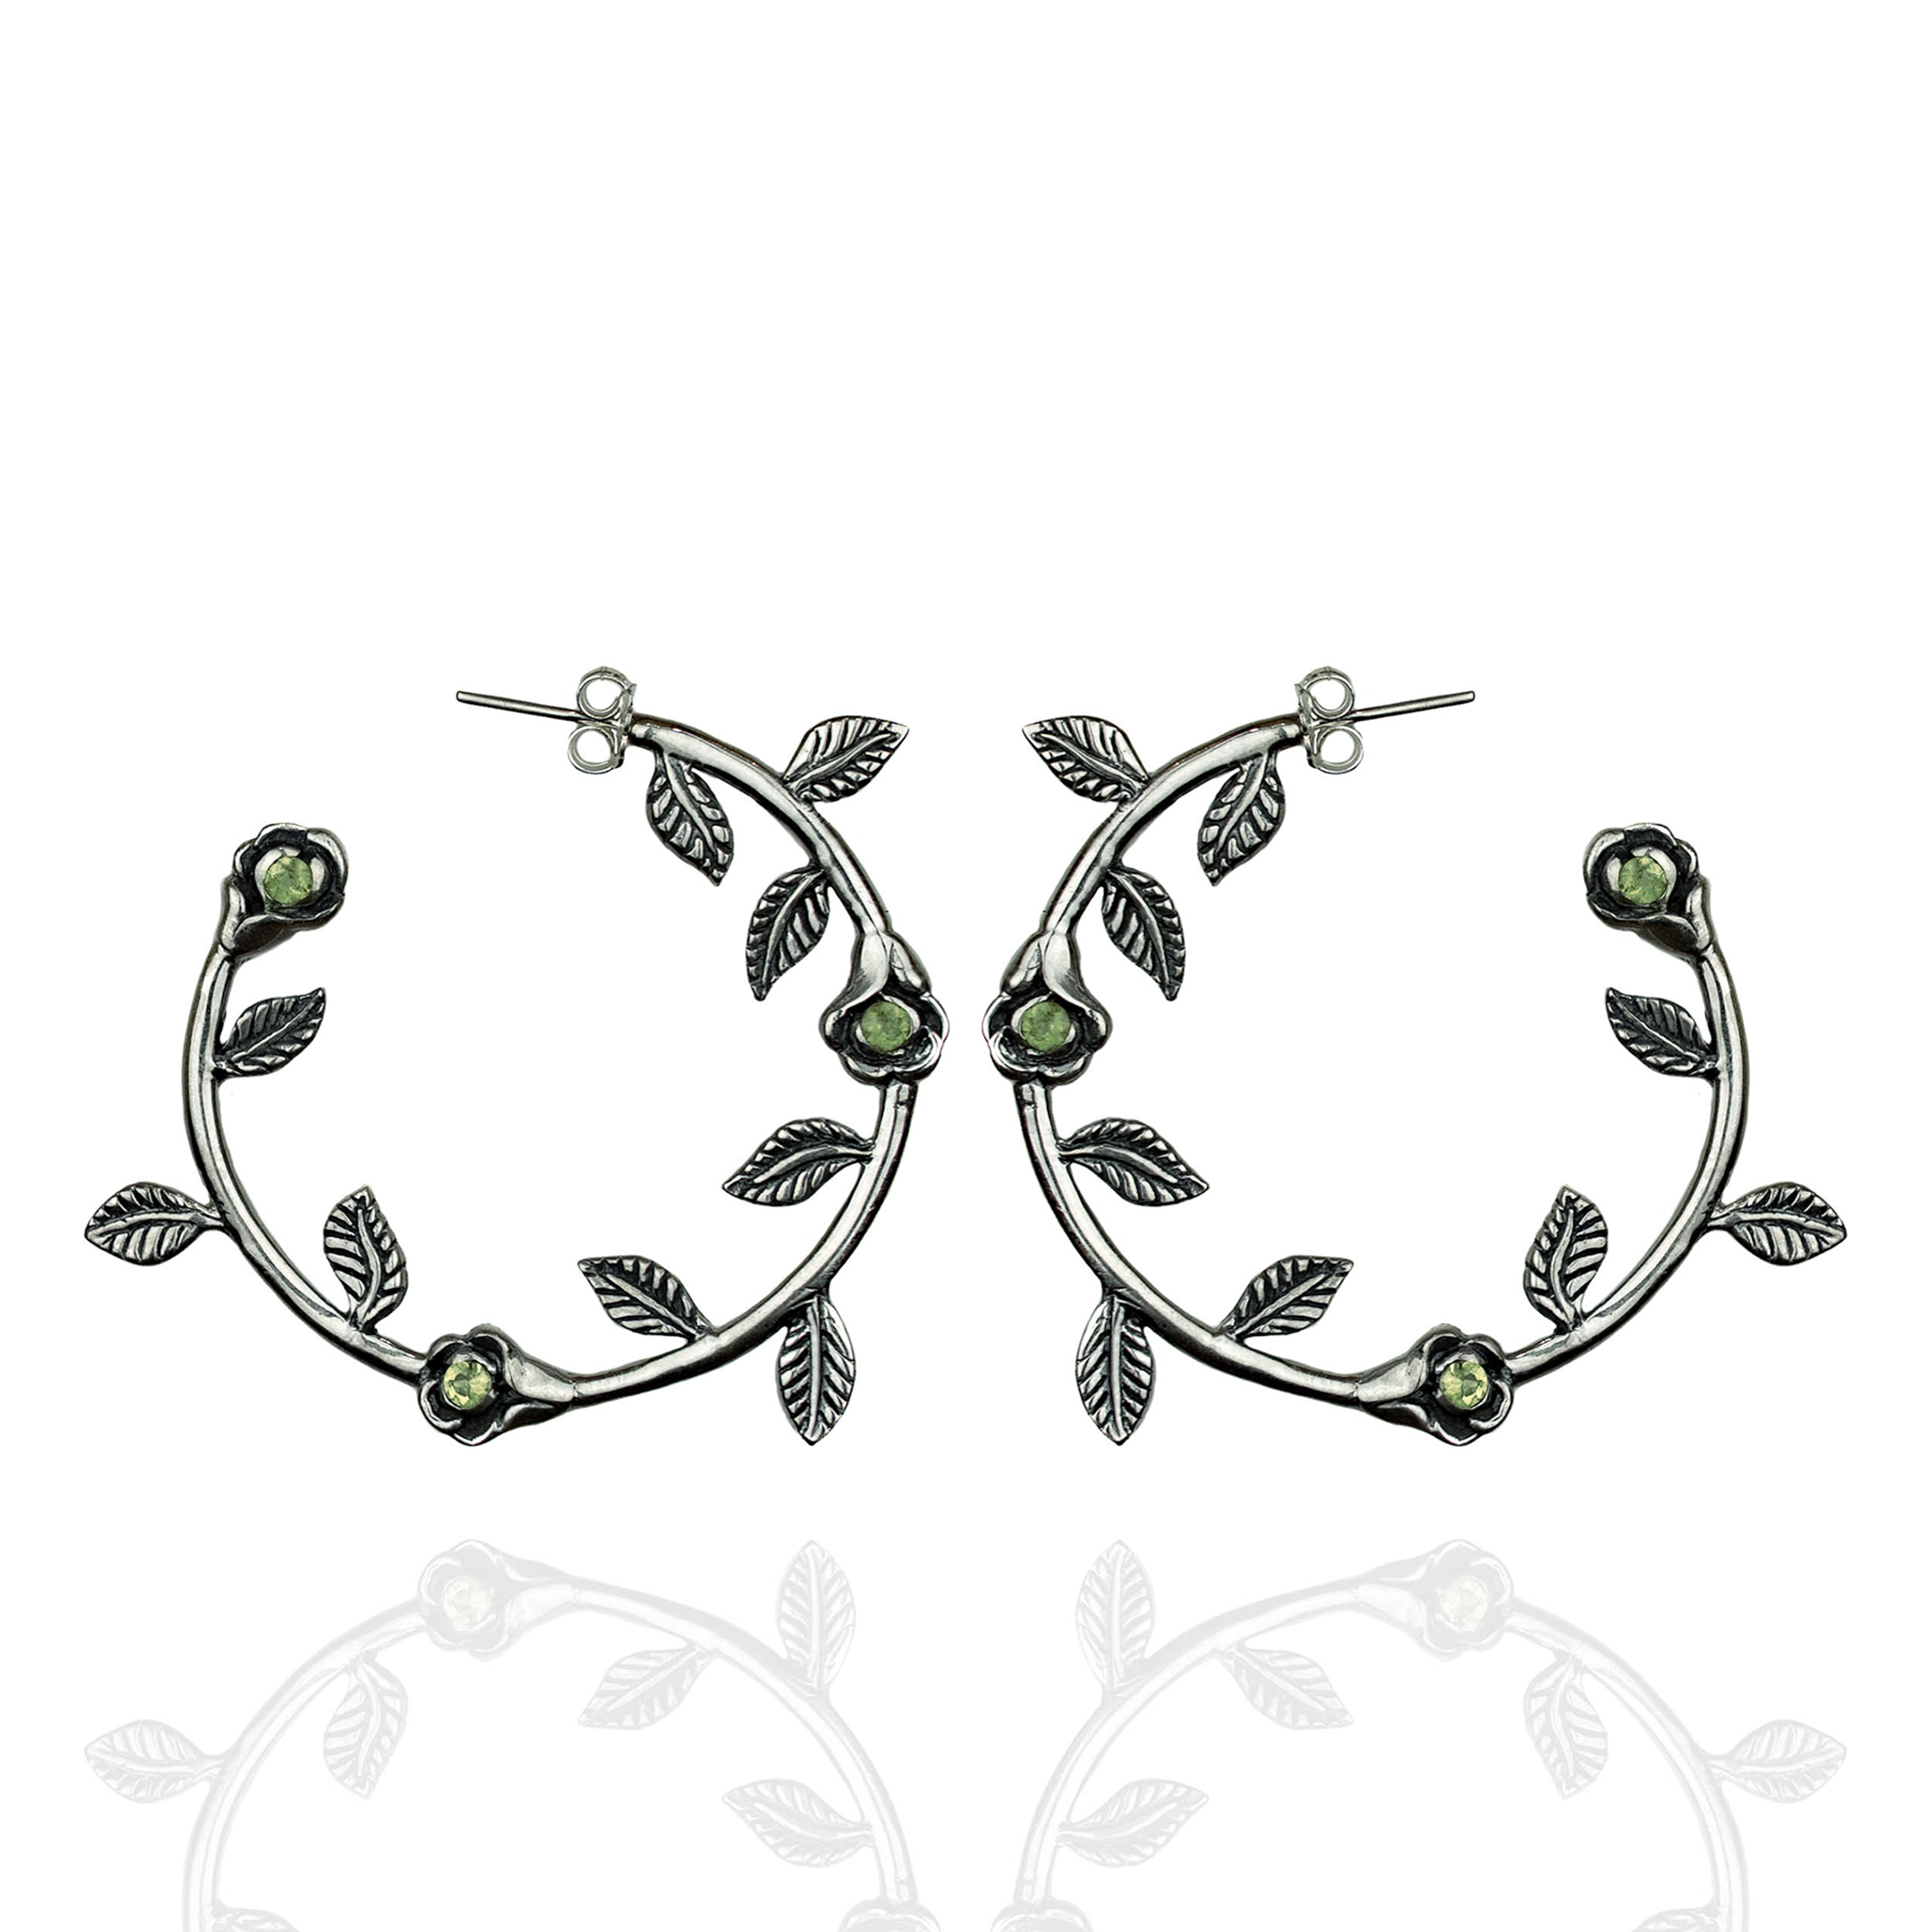 Silver rose hoop earrings with peridot stones